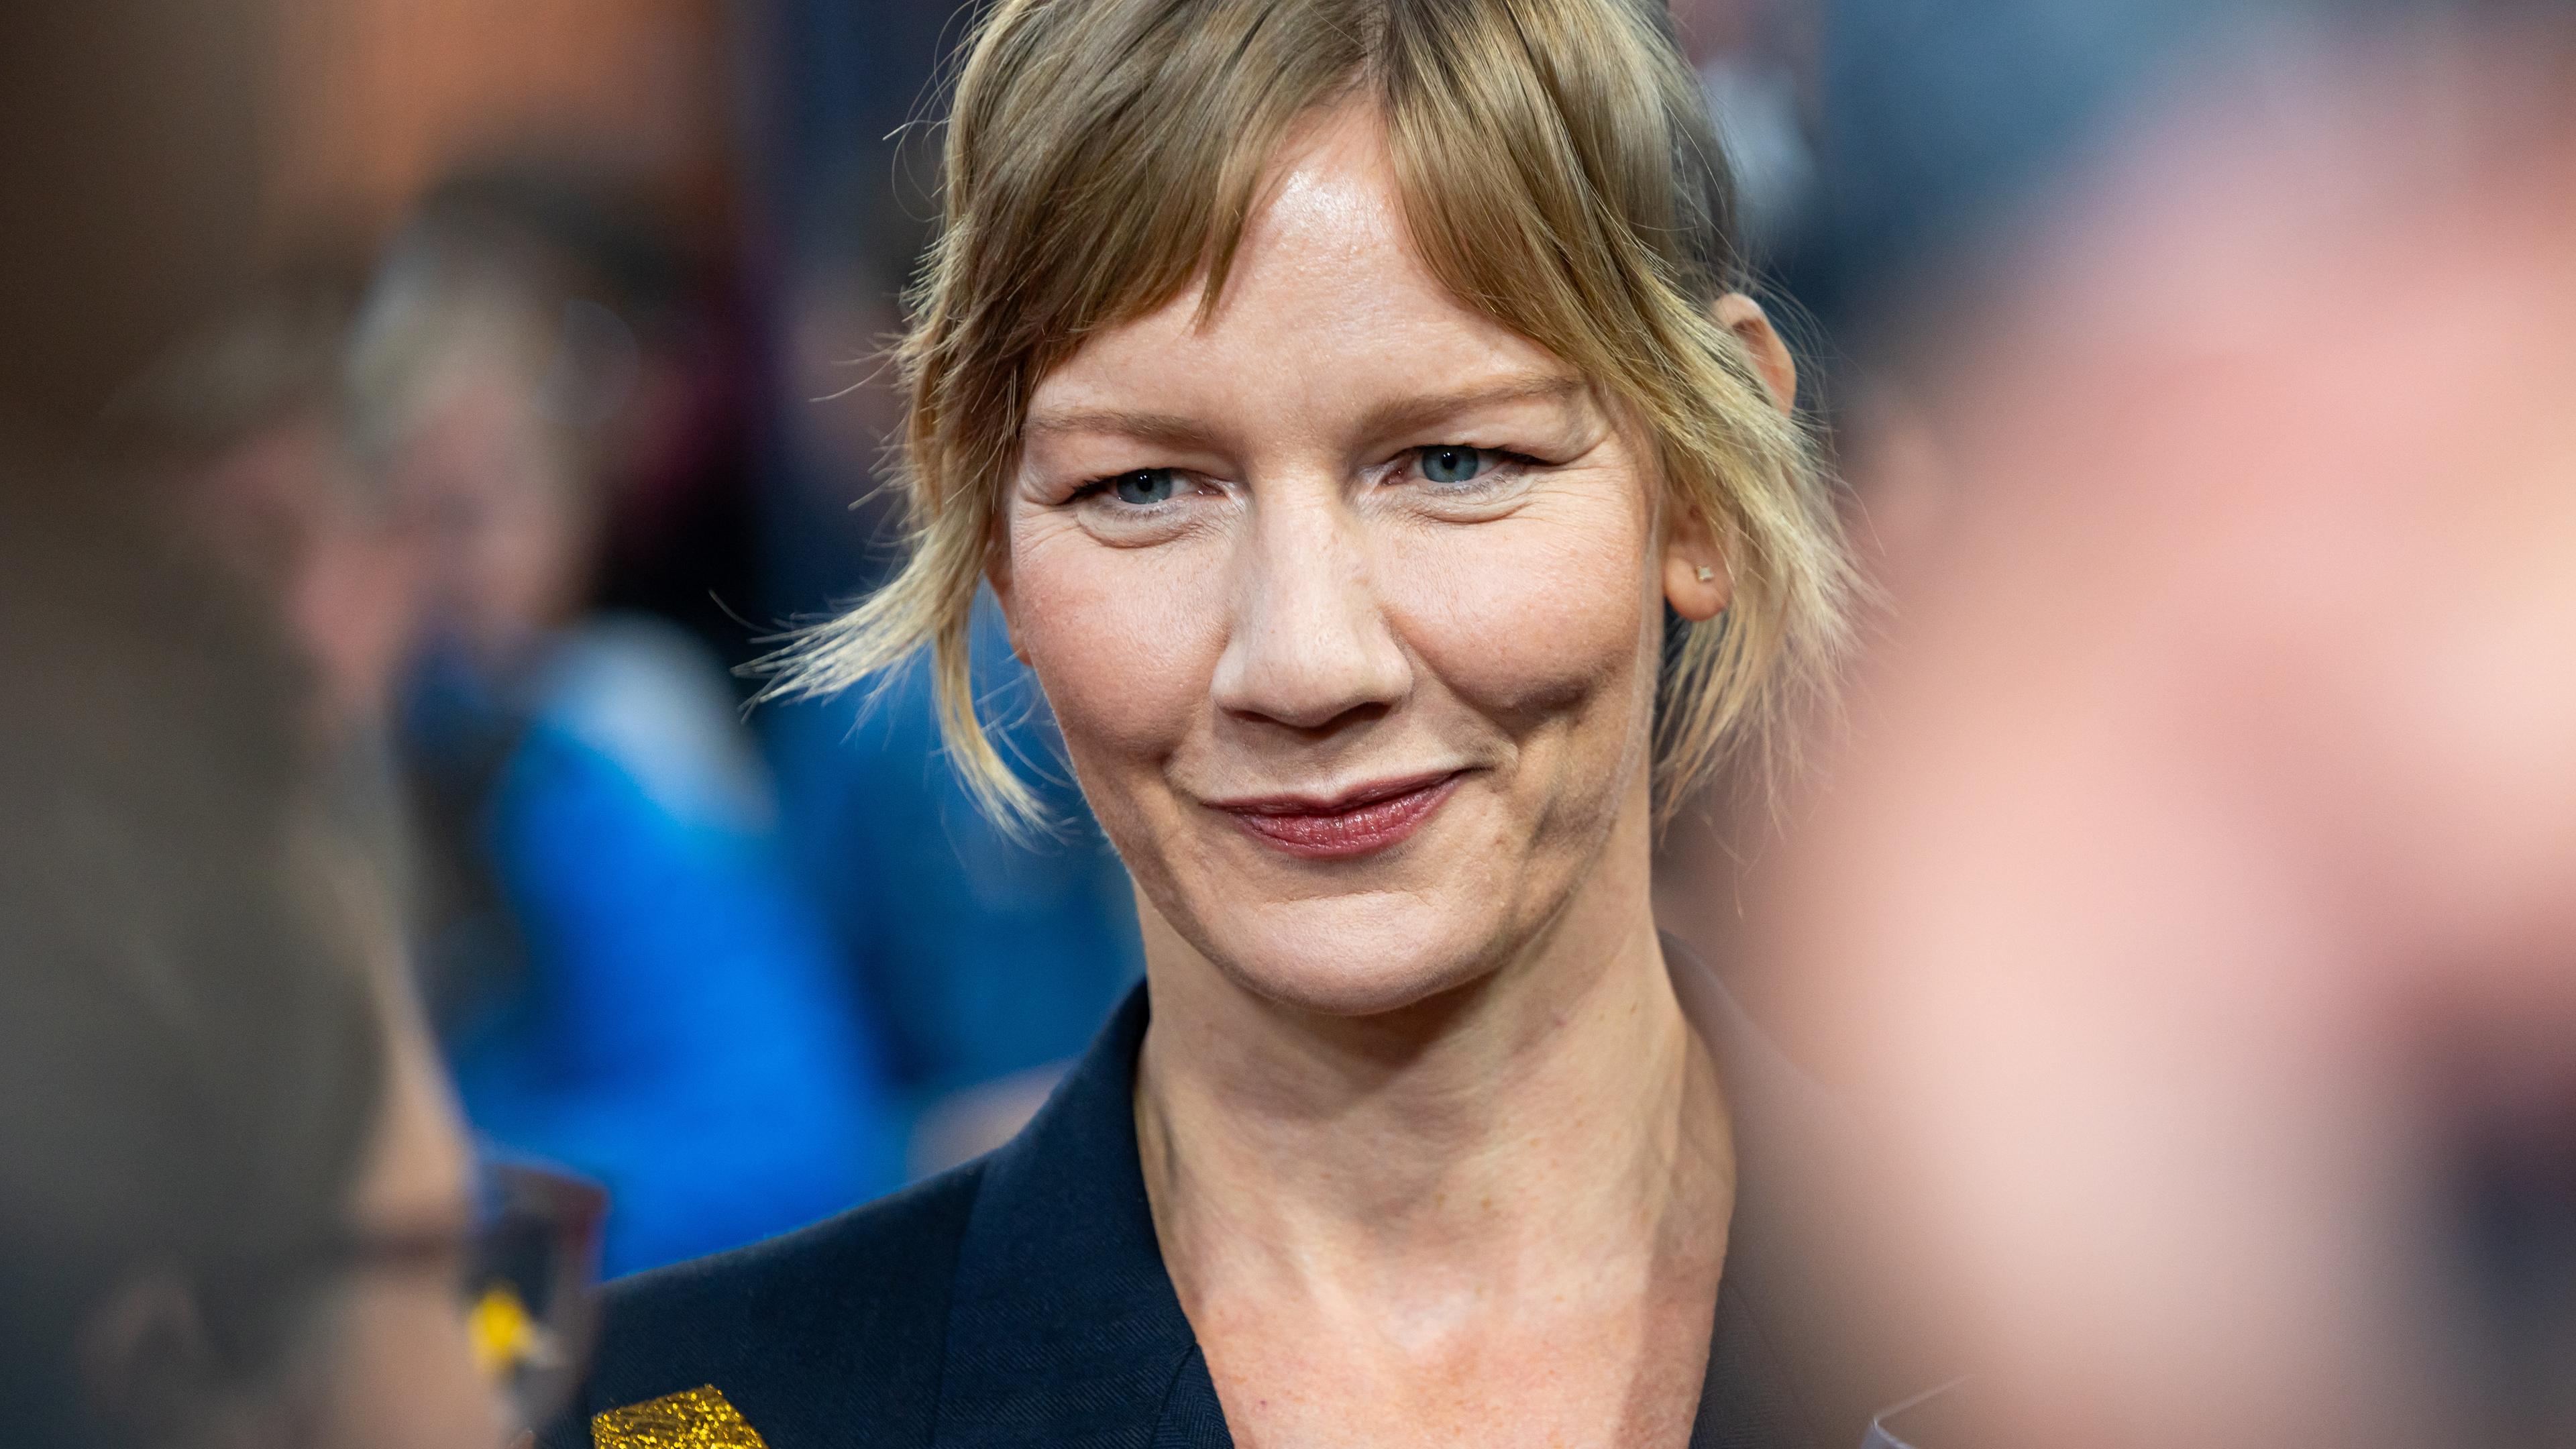 Schauspielerin Sandra Hüller lächelt, umringt von anderen Menschen.